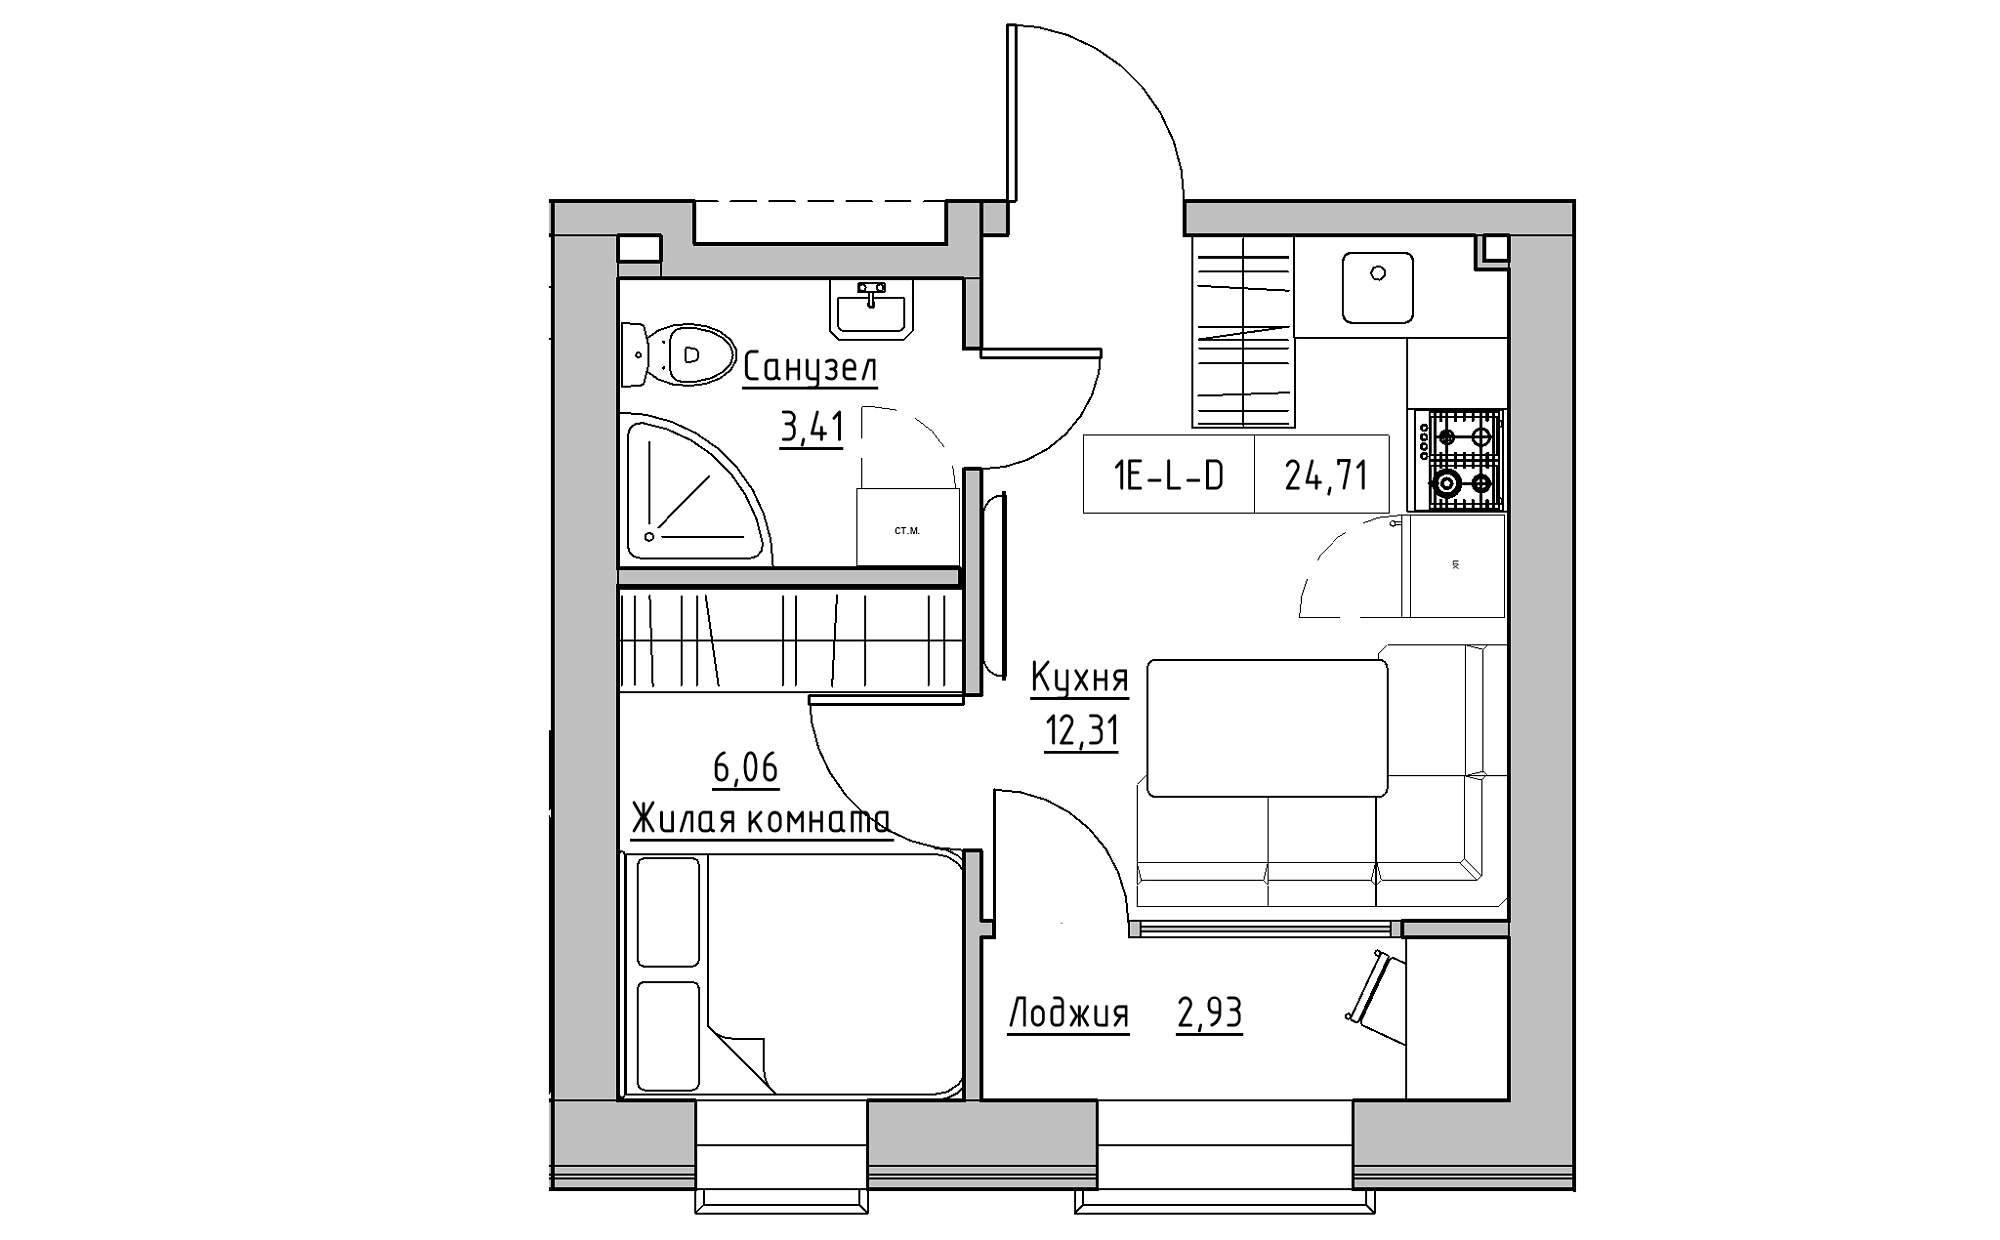 Планировка 1-к квартира площей 24.71м2, KS-022-05/0002.